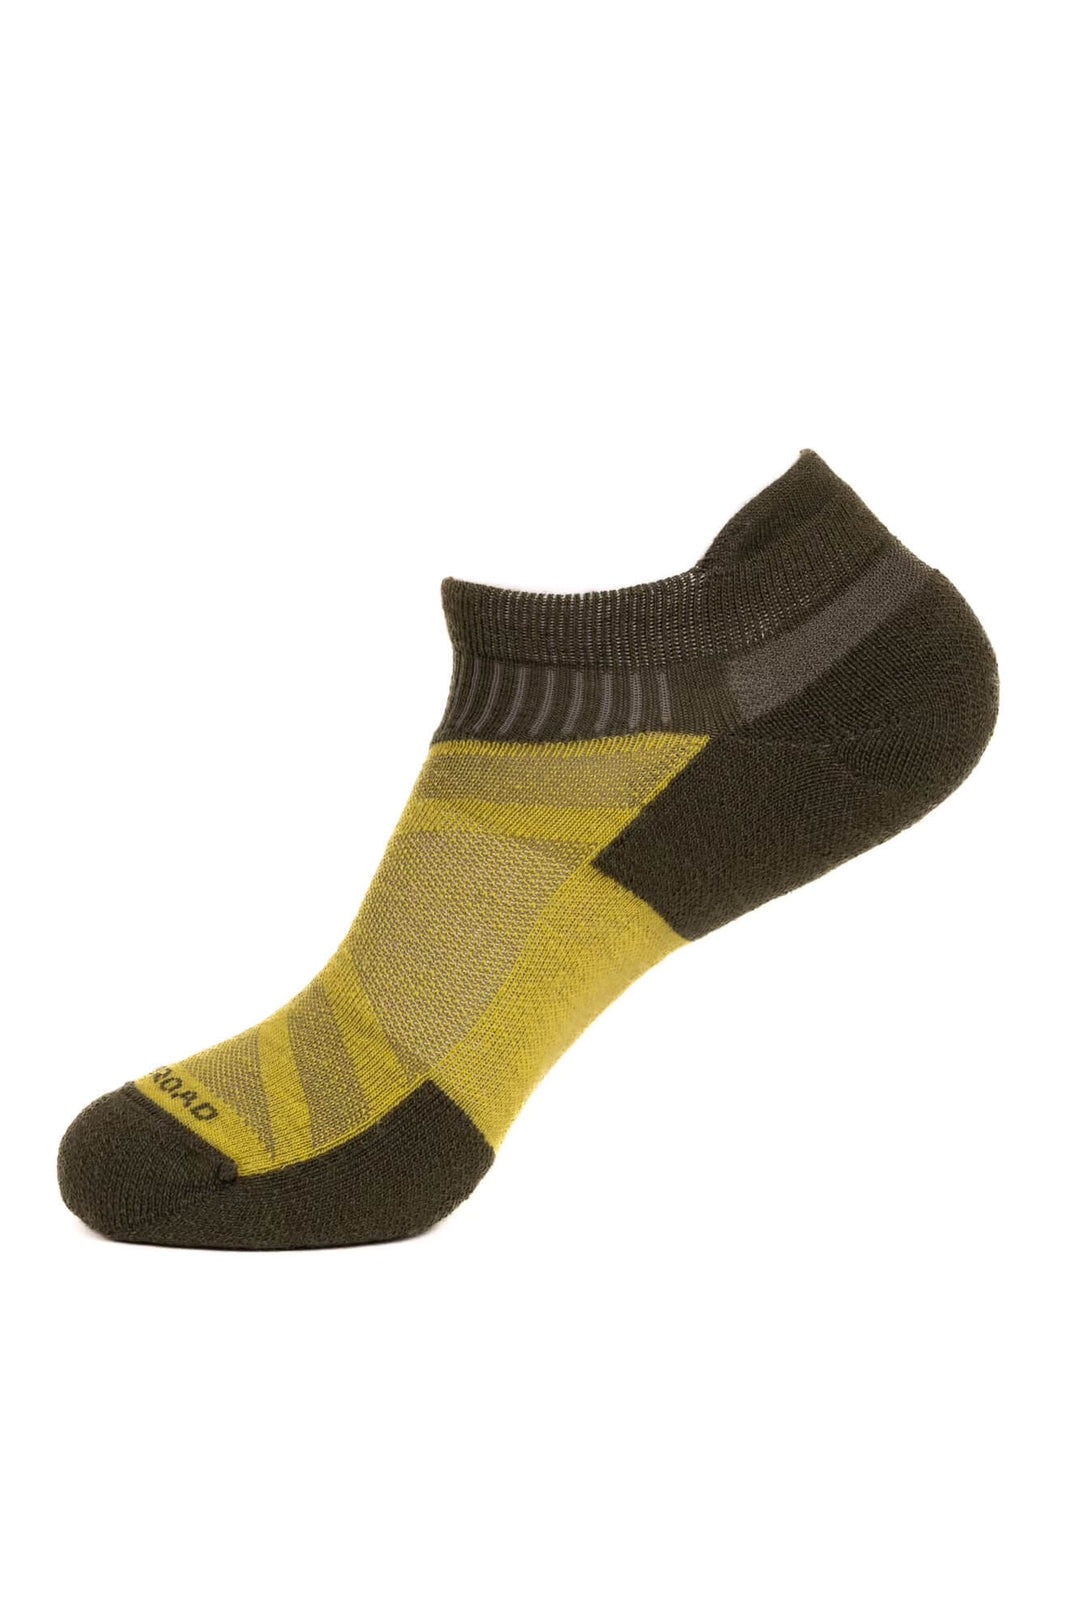 Sheeple Merino Sock - Ankle Height - Ponderosa - Woodroad Gear Co.